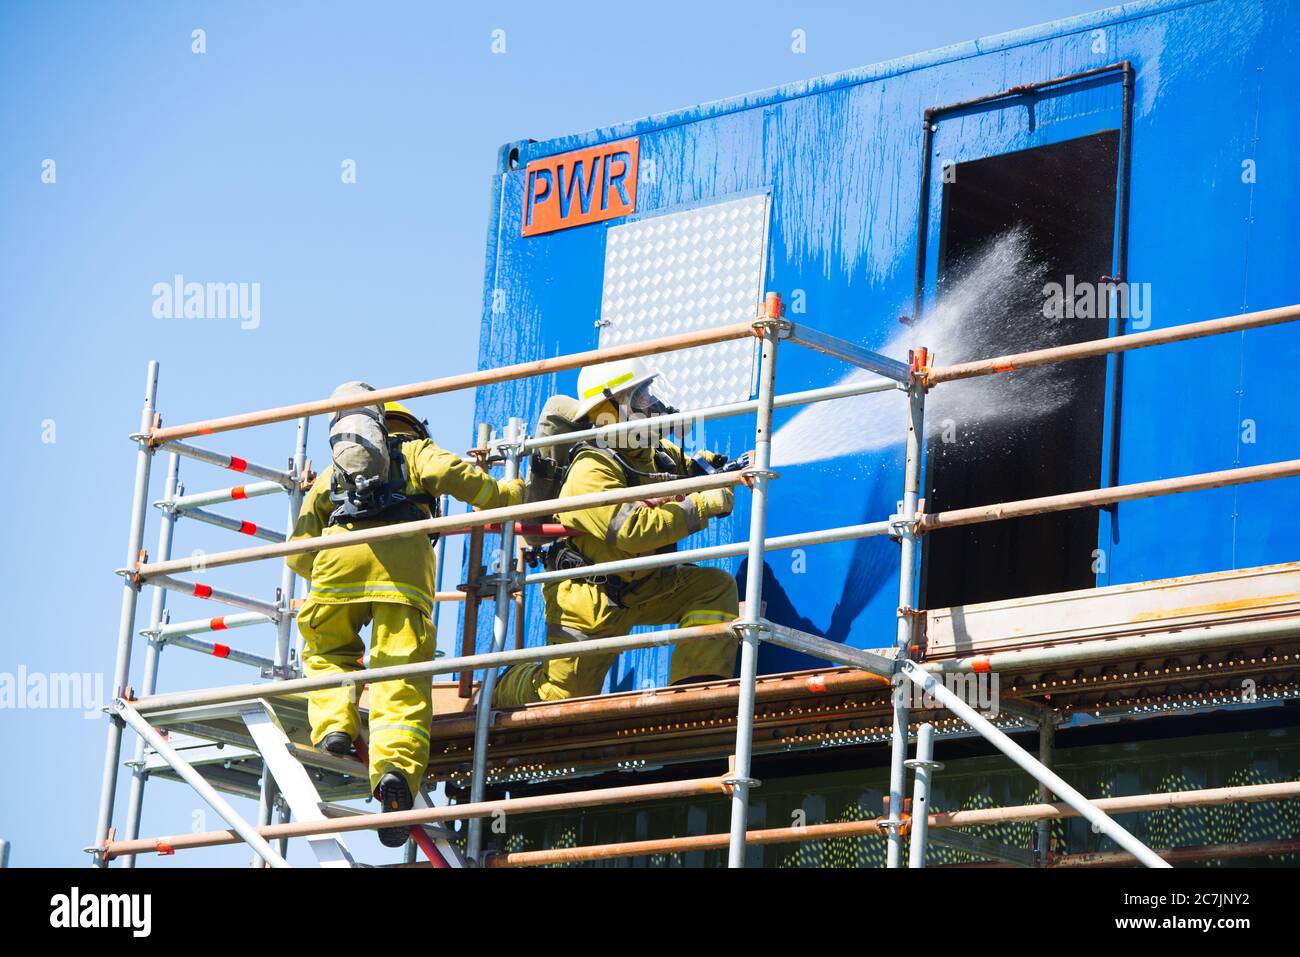 Perth, Australie, 26 novembre 2017 : pompier d'une équipe d'intervention d'urgence avec masque à oxygène et tuyau d'extinction d'incendie avec eau lors de l'exercice d'entraînement Banque D'Images